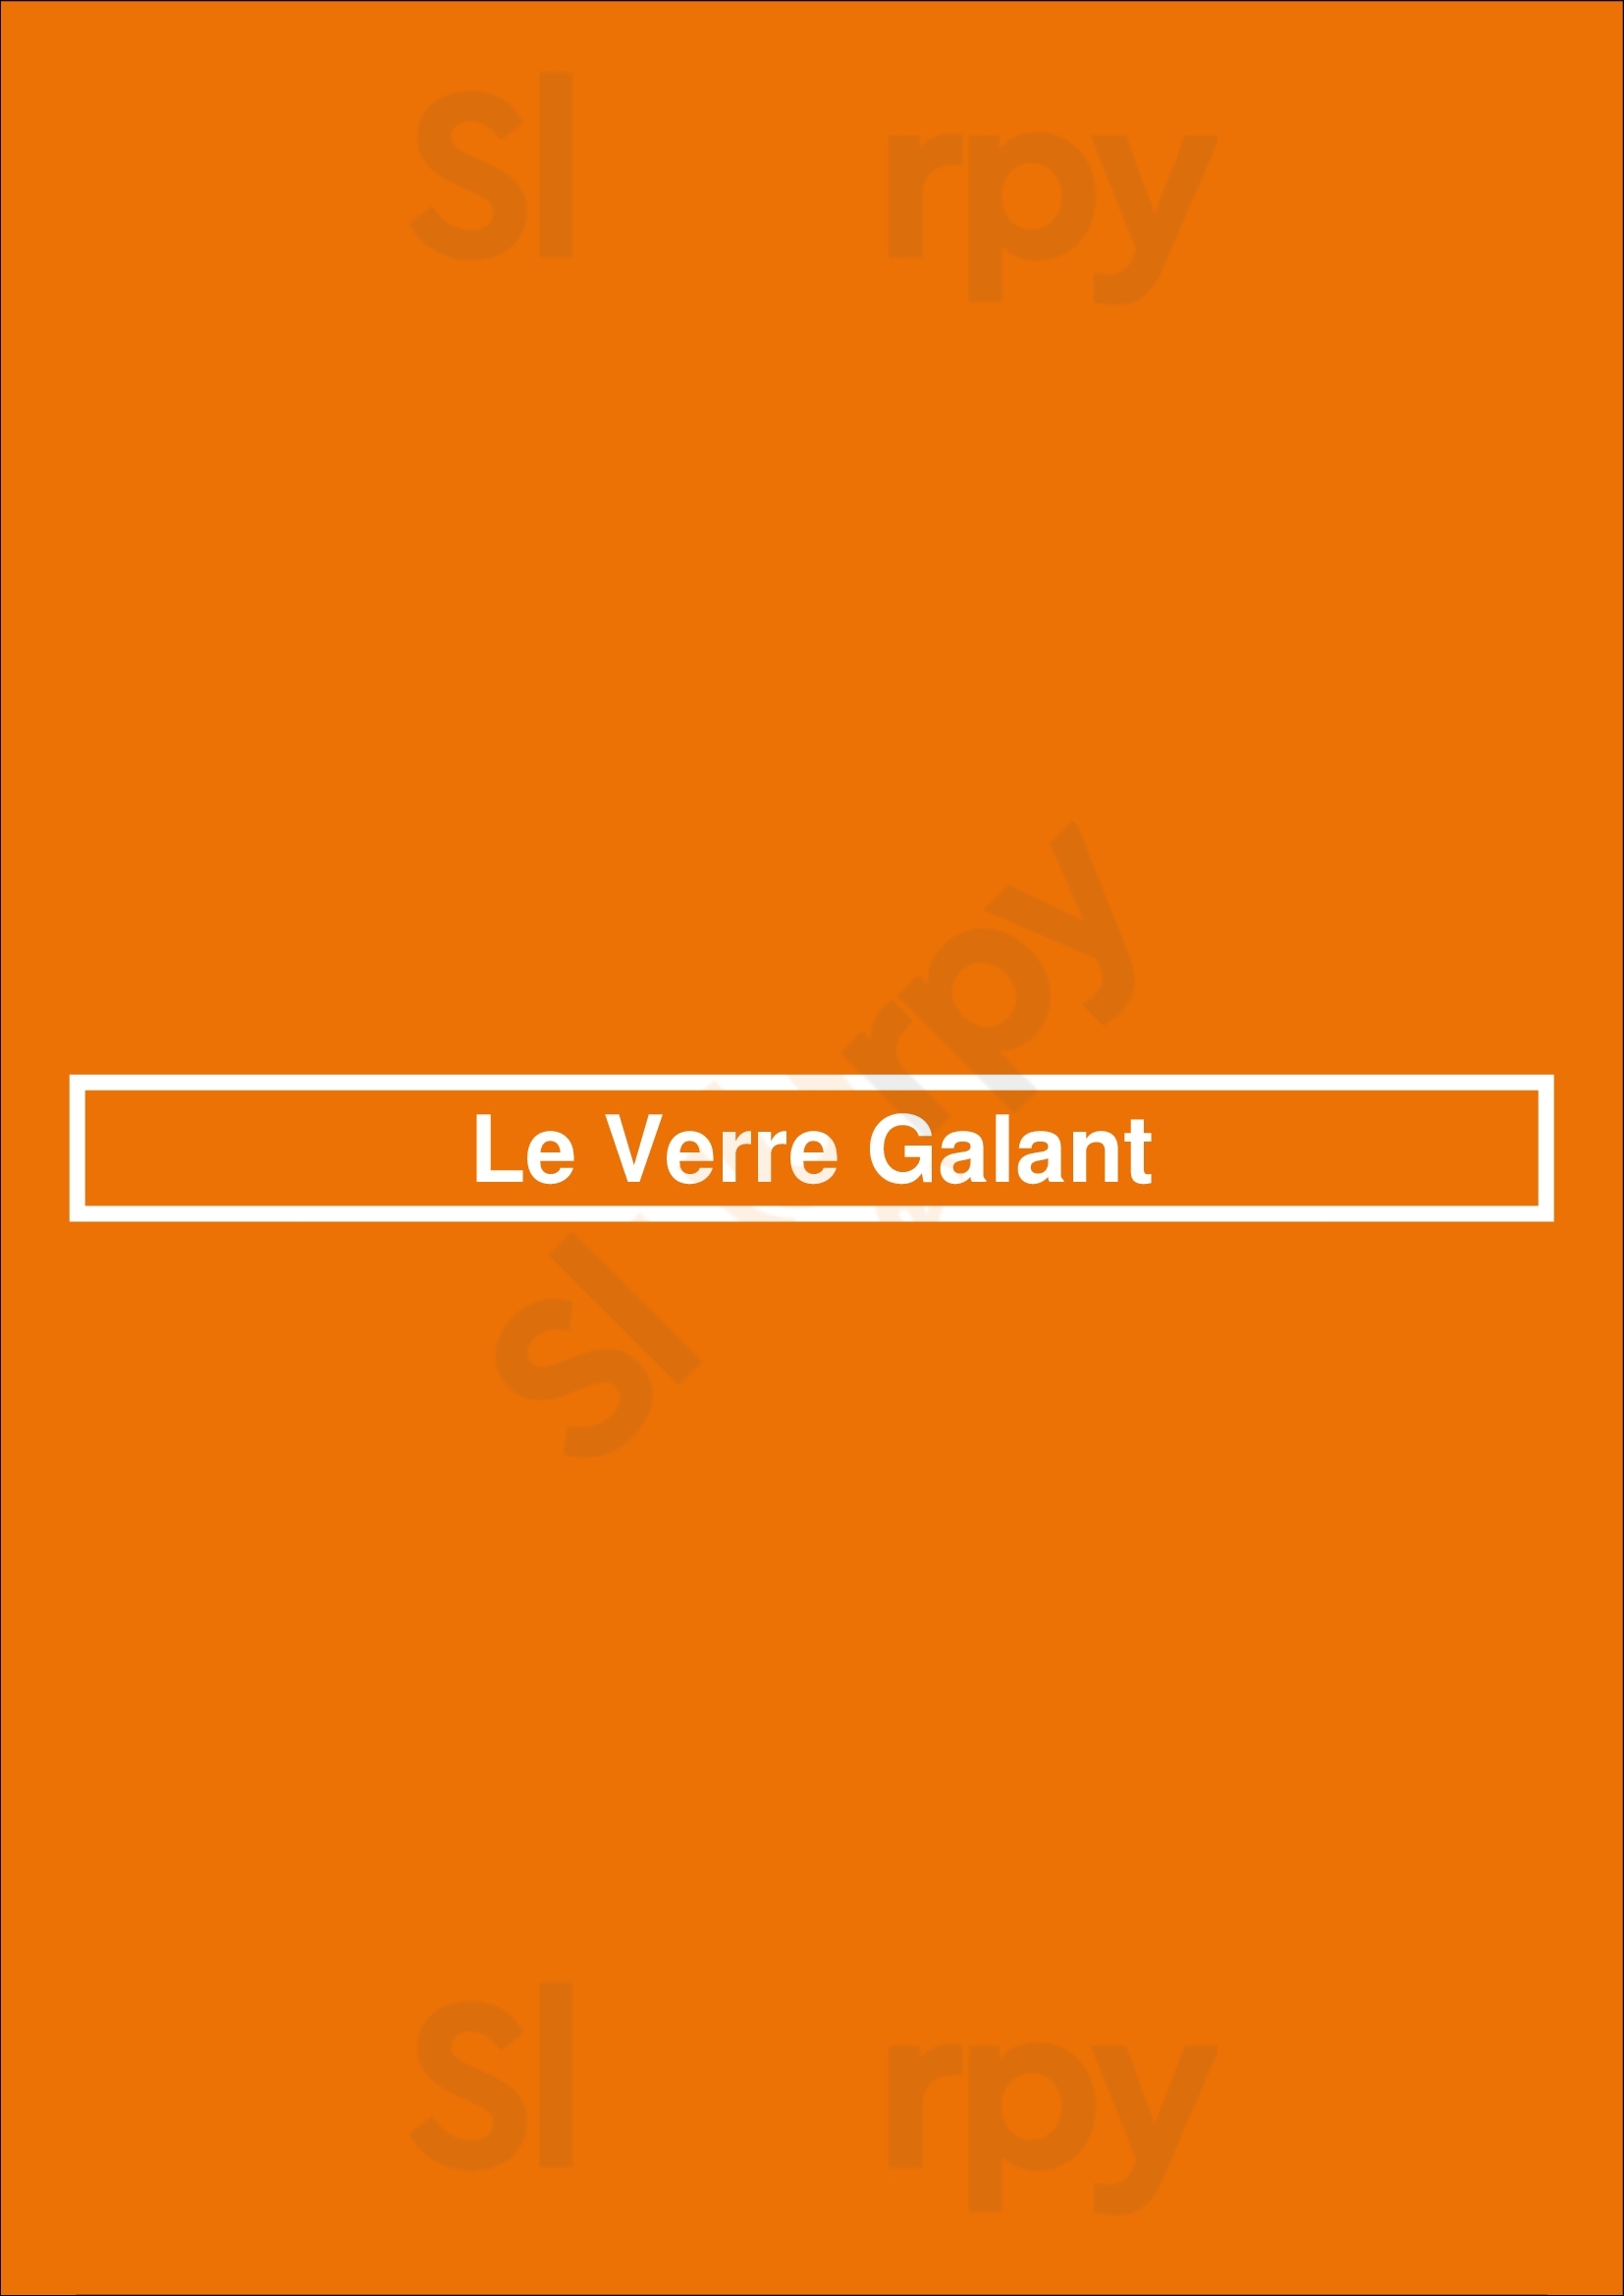 Le Verre Galant Paris Menu - 1